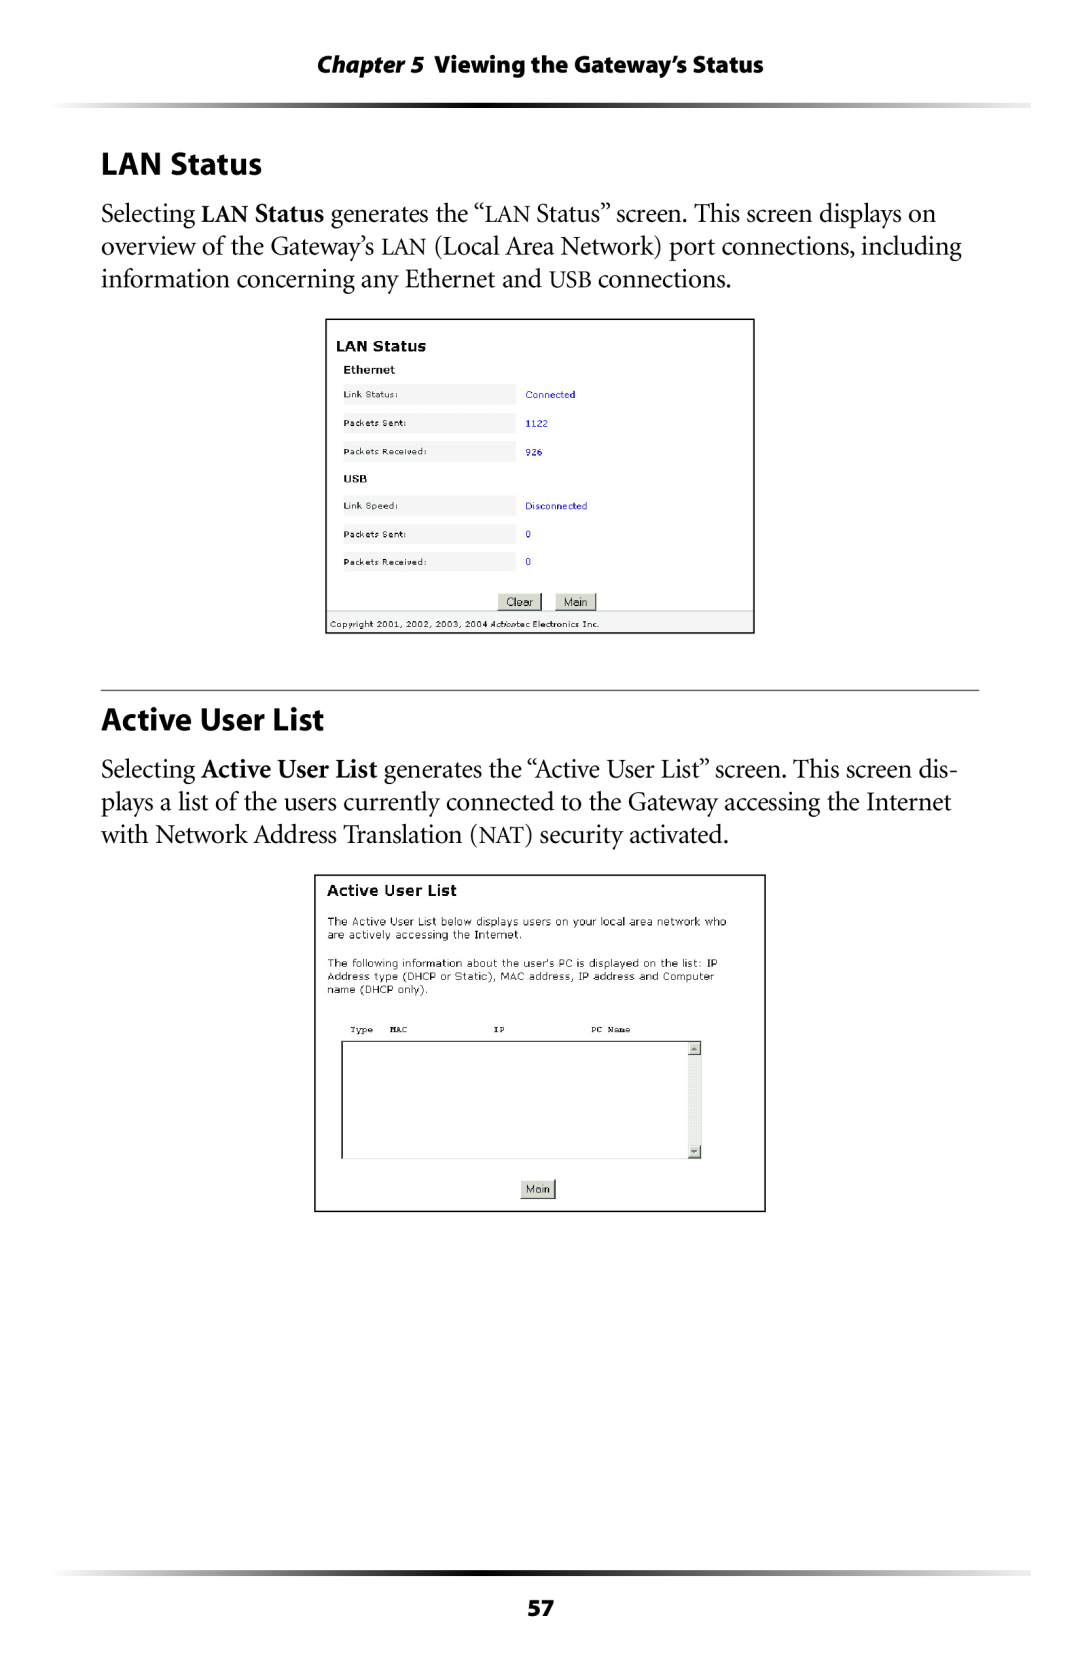 Gateway GT704 user manual LAN Status, Active User List, Viewing the Gateway’s Status 